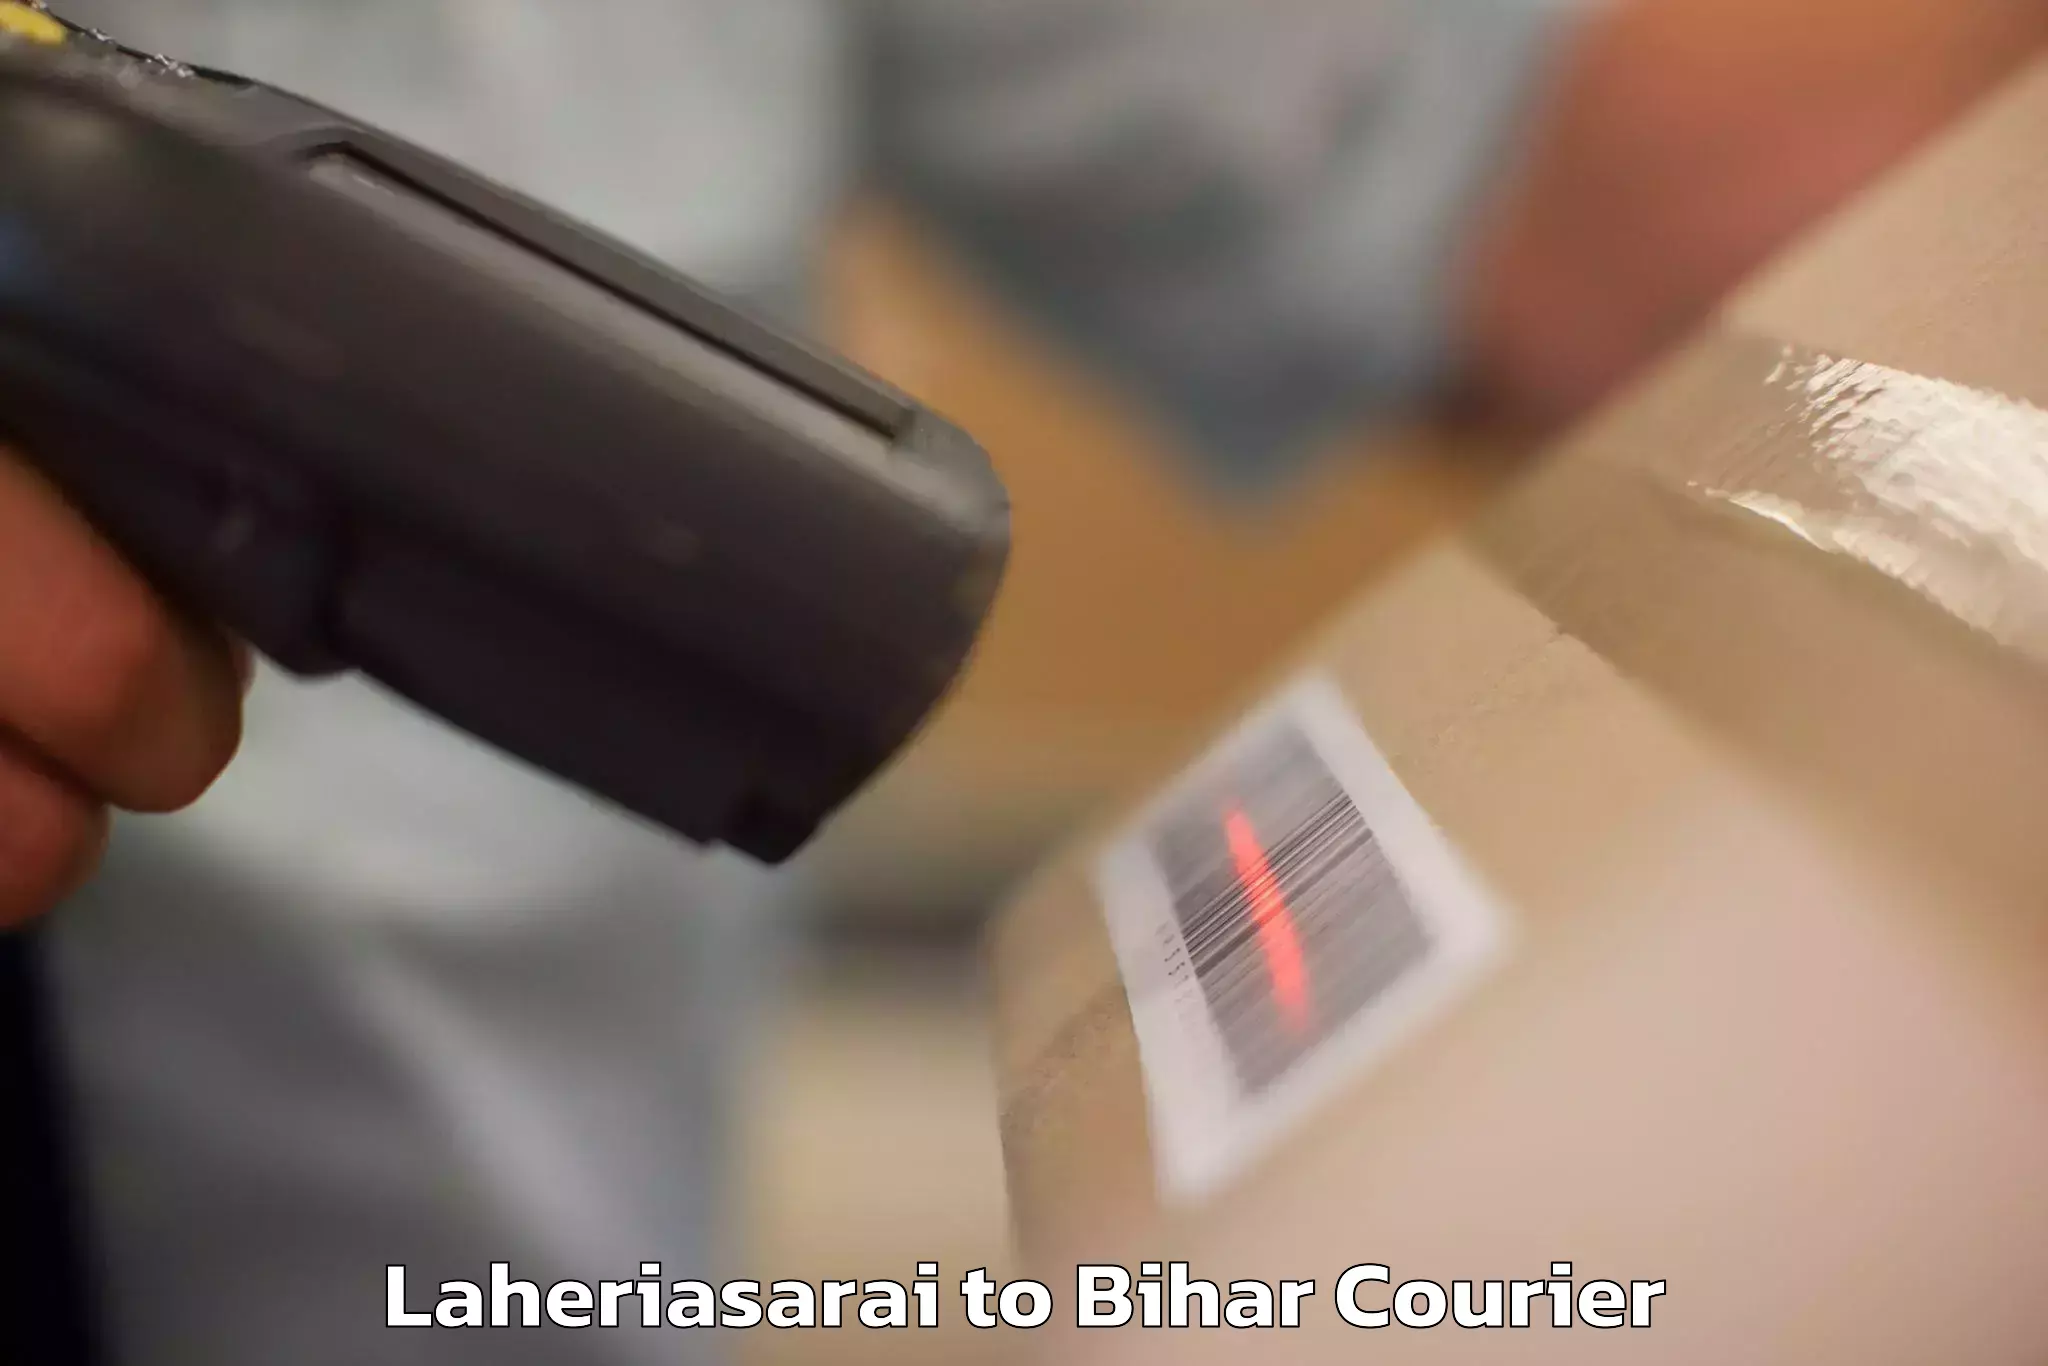 Luggage shipment tracking Laheriasarai to Lakhisarai